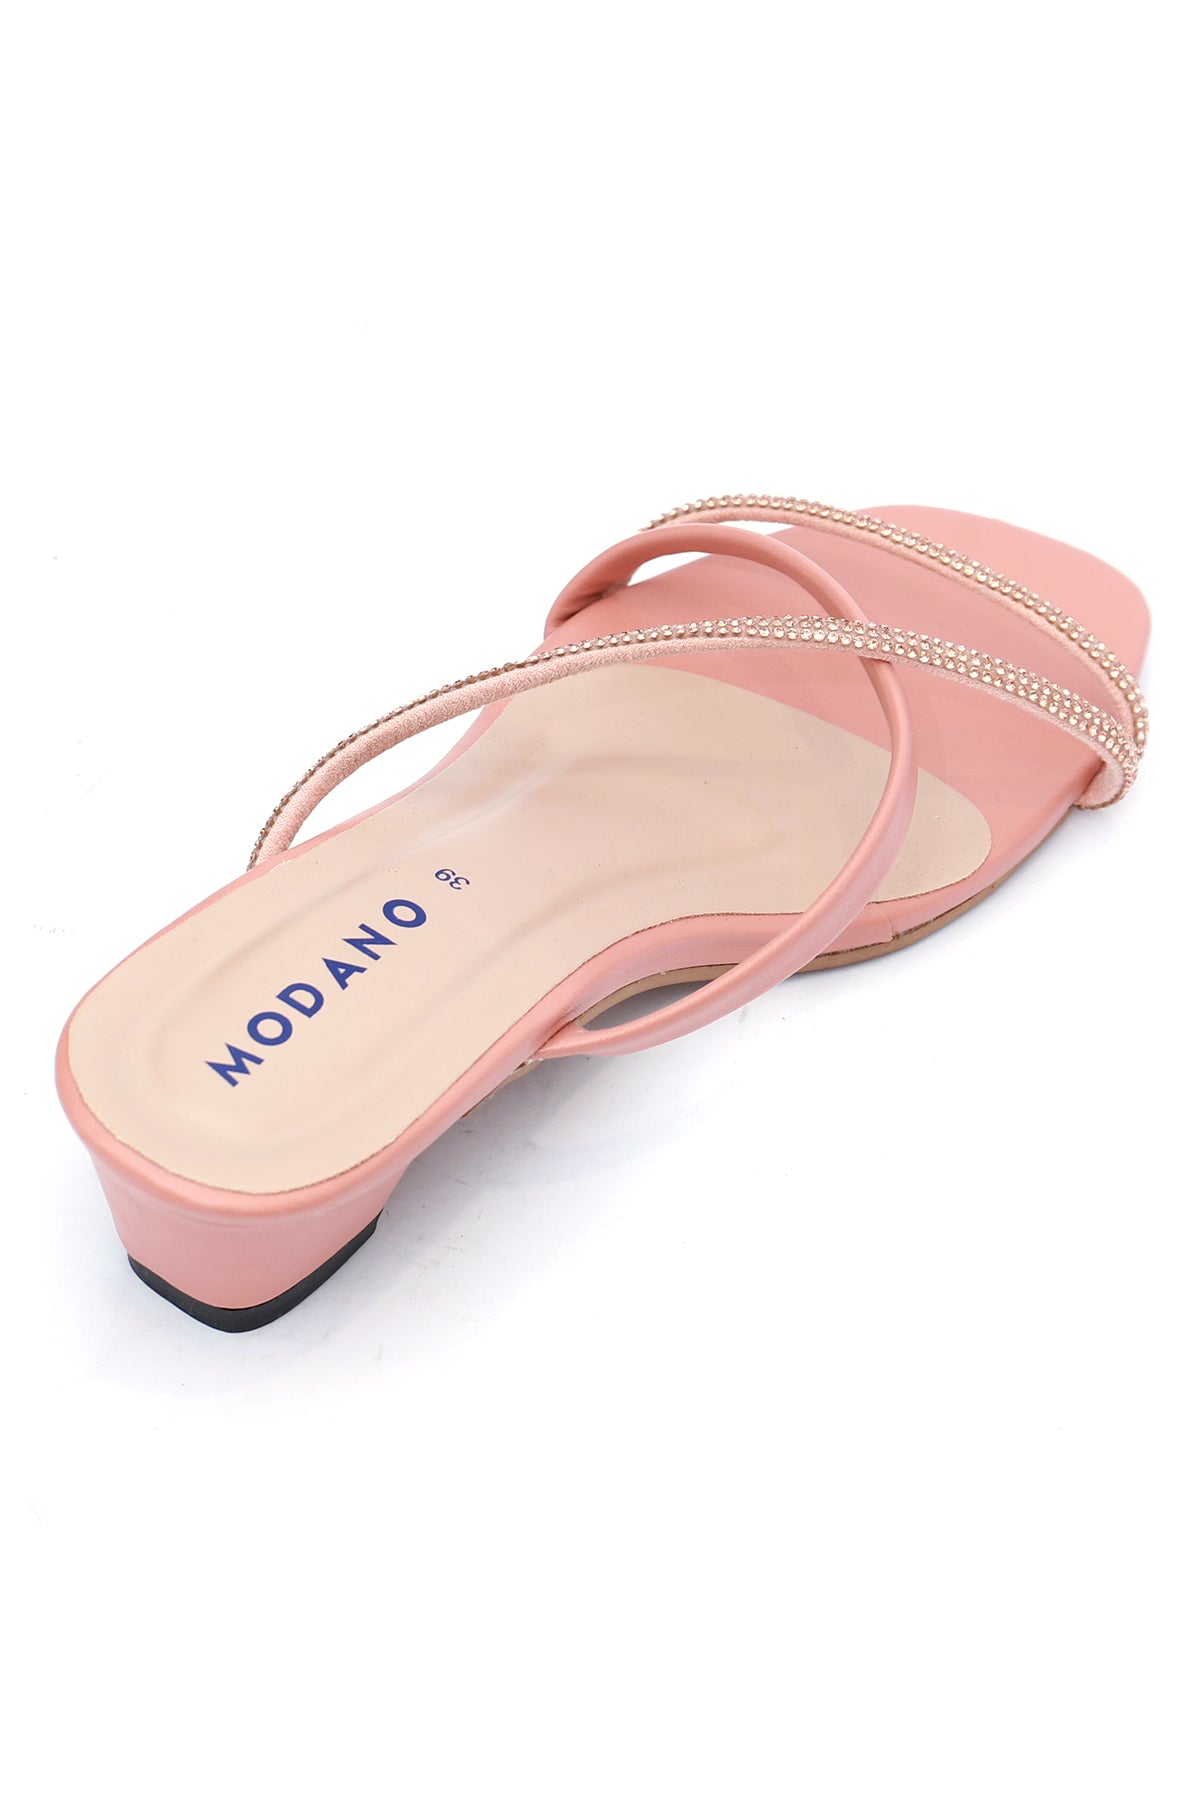 Modano Women's Casual Heels